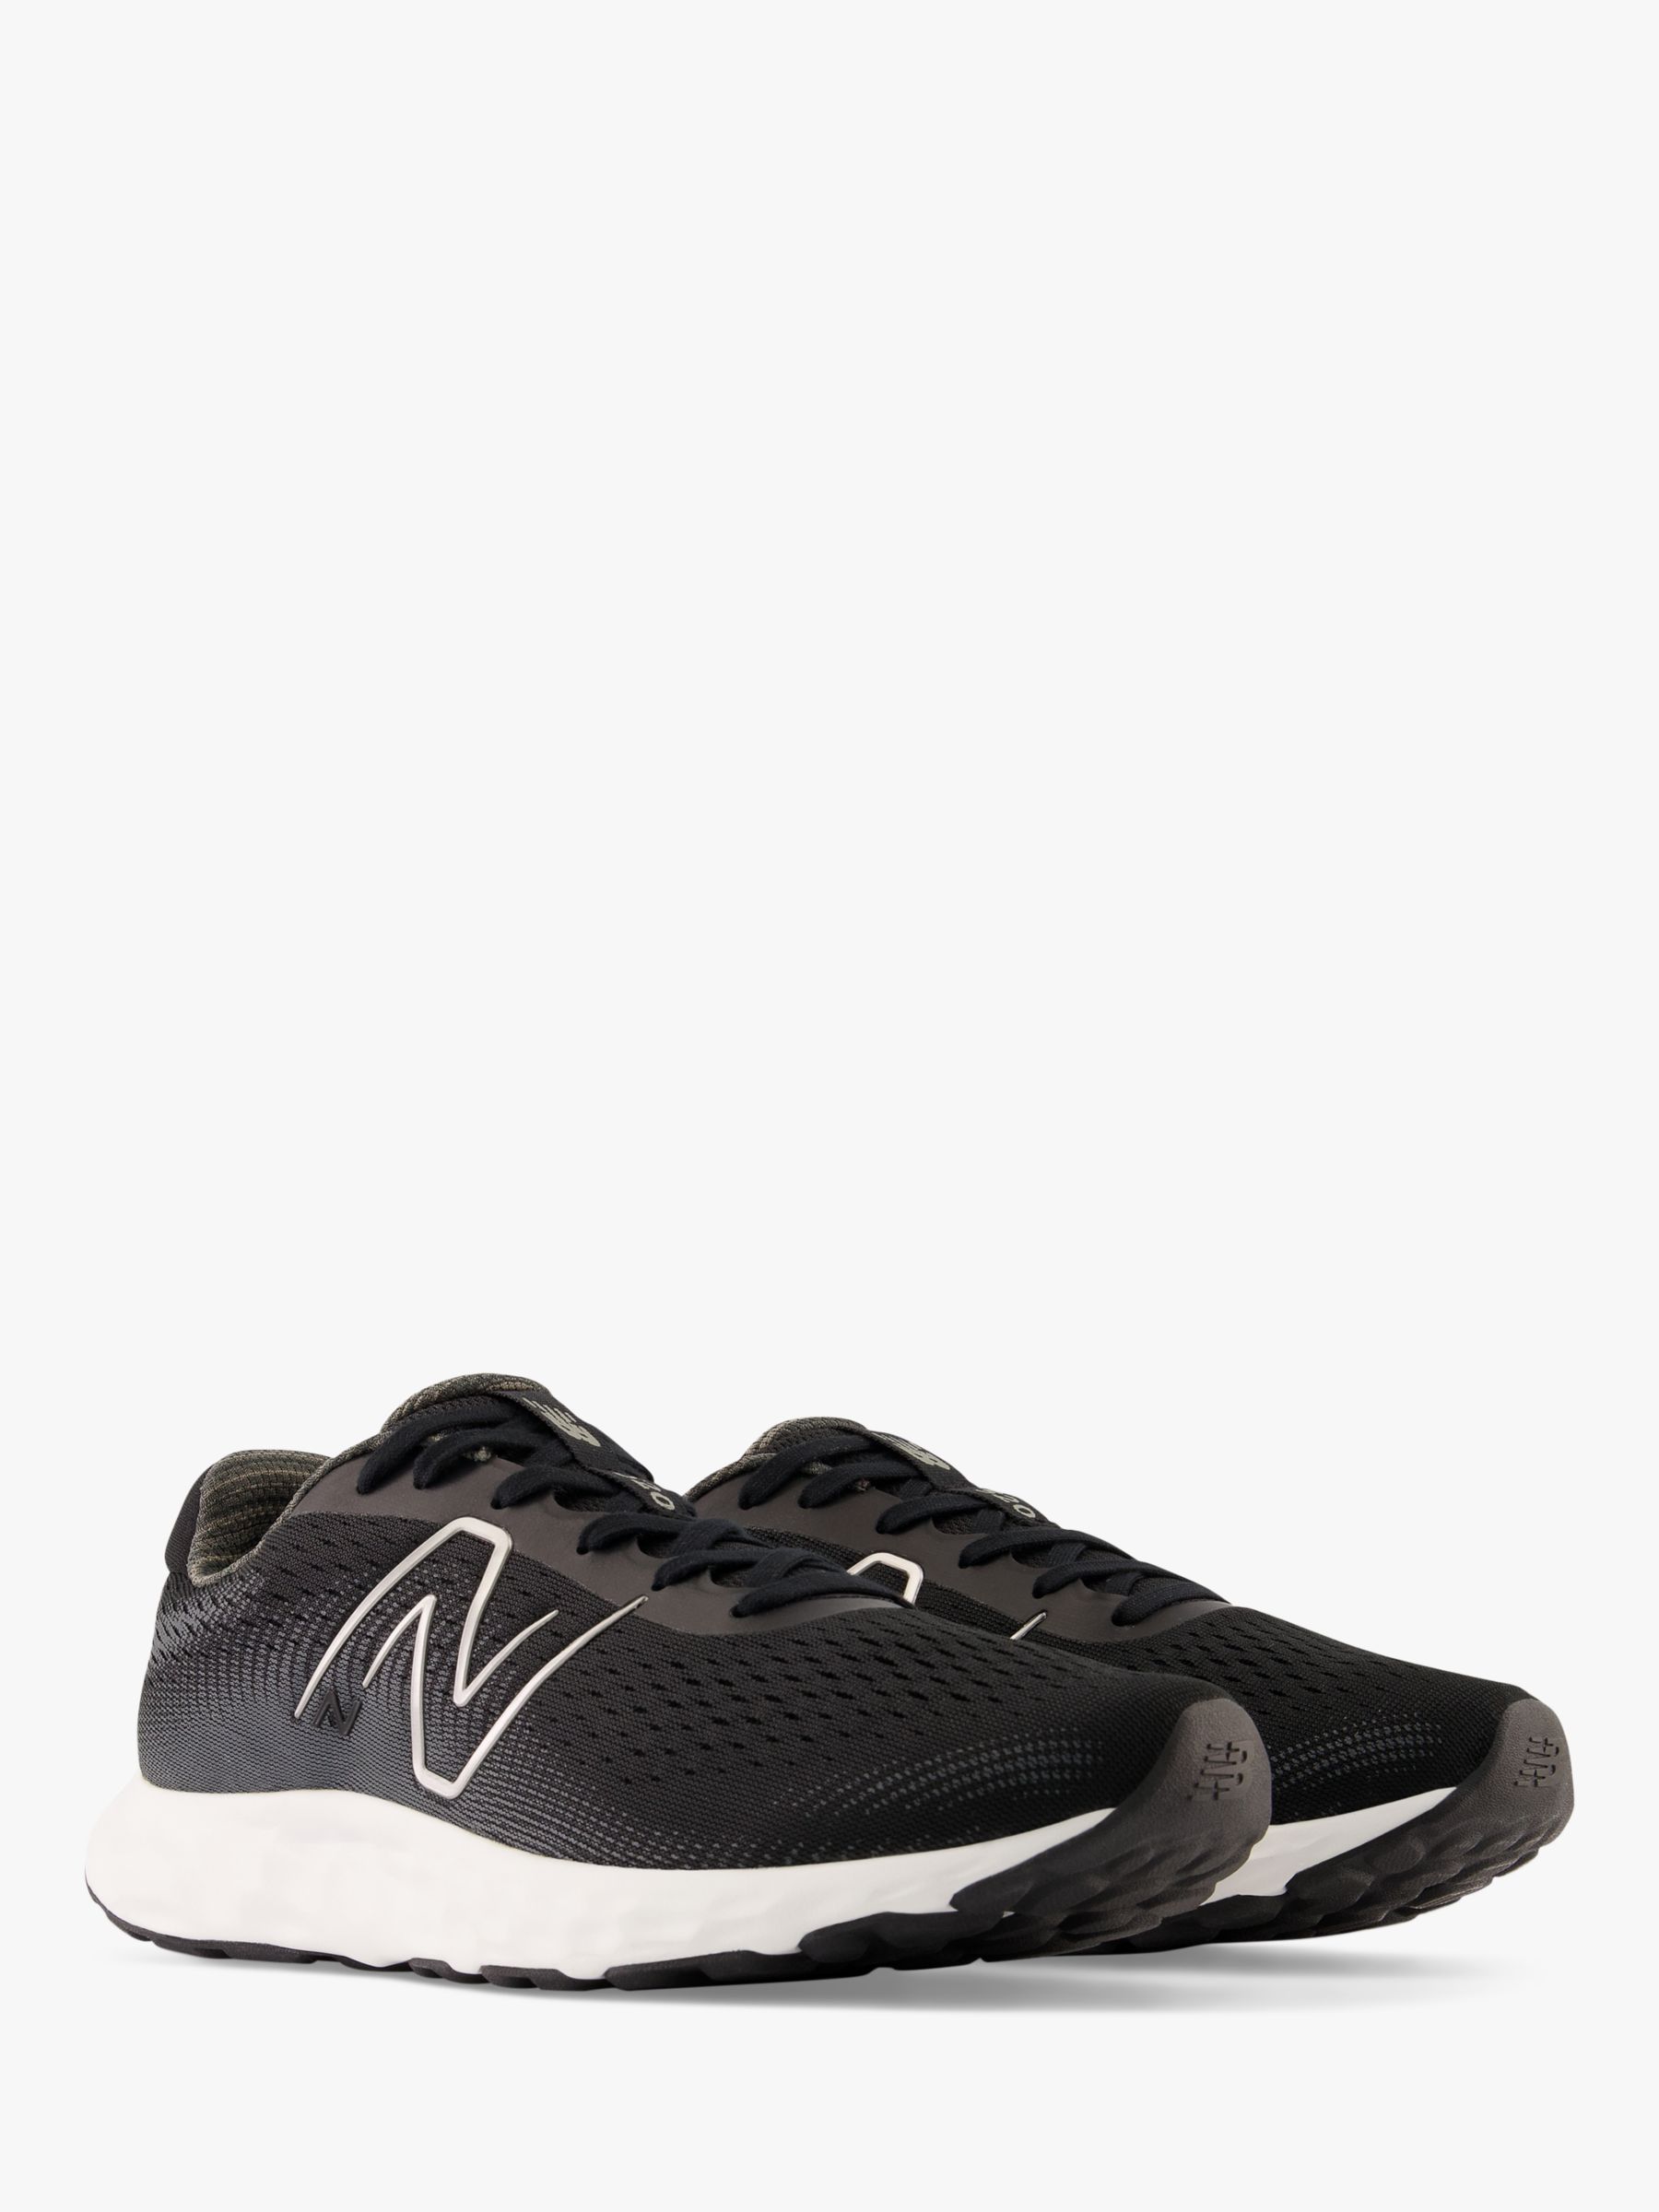 New Balance 520v8 Men's Running Shoes, Black/White, 9